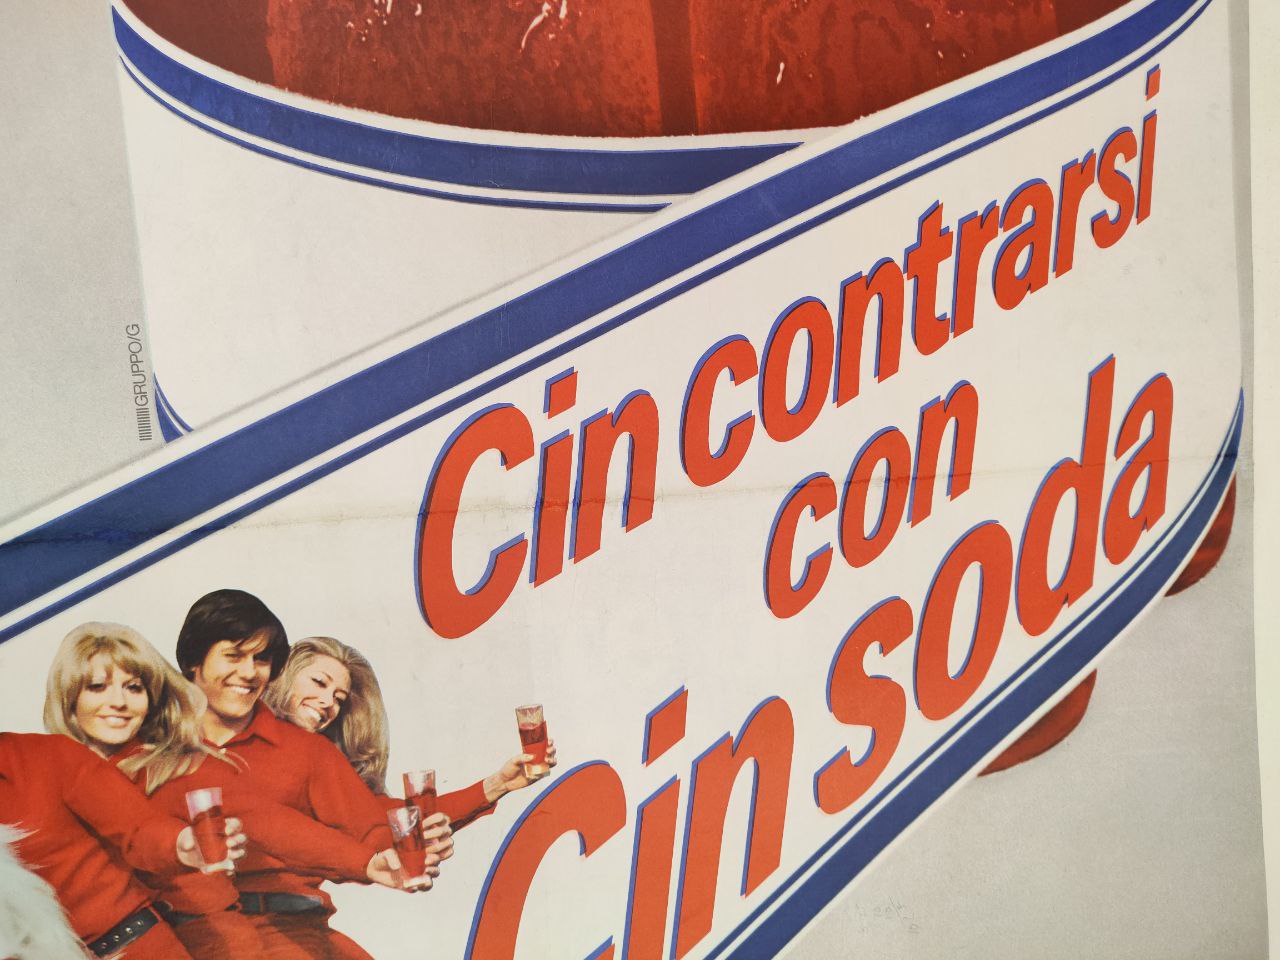 Manifesto originale pubblicitario - Cinzano Cin soda